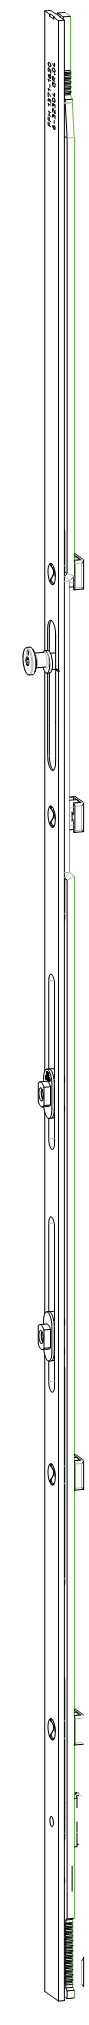 GU-ITALIA -  Cremonese GU-966 per complanare parallelo altezza maniglia fissa prolungabile senza dss - gr / dim. 1840 - alt. man. 980 - lbb/hbb 2121 - 2370